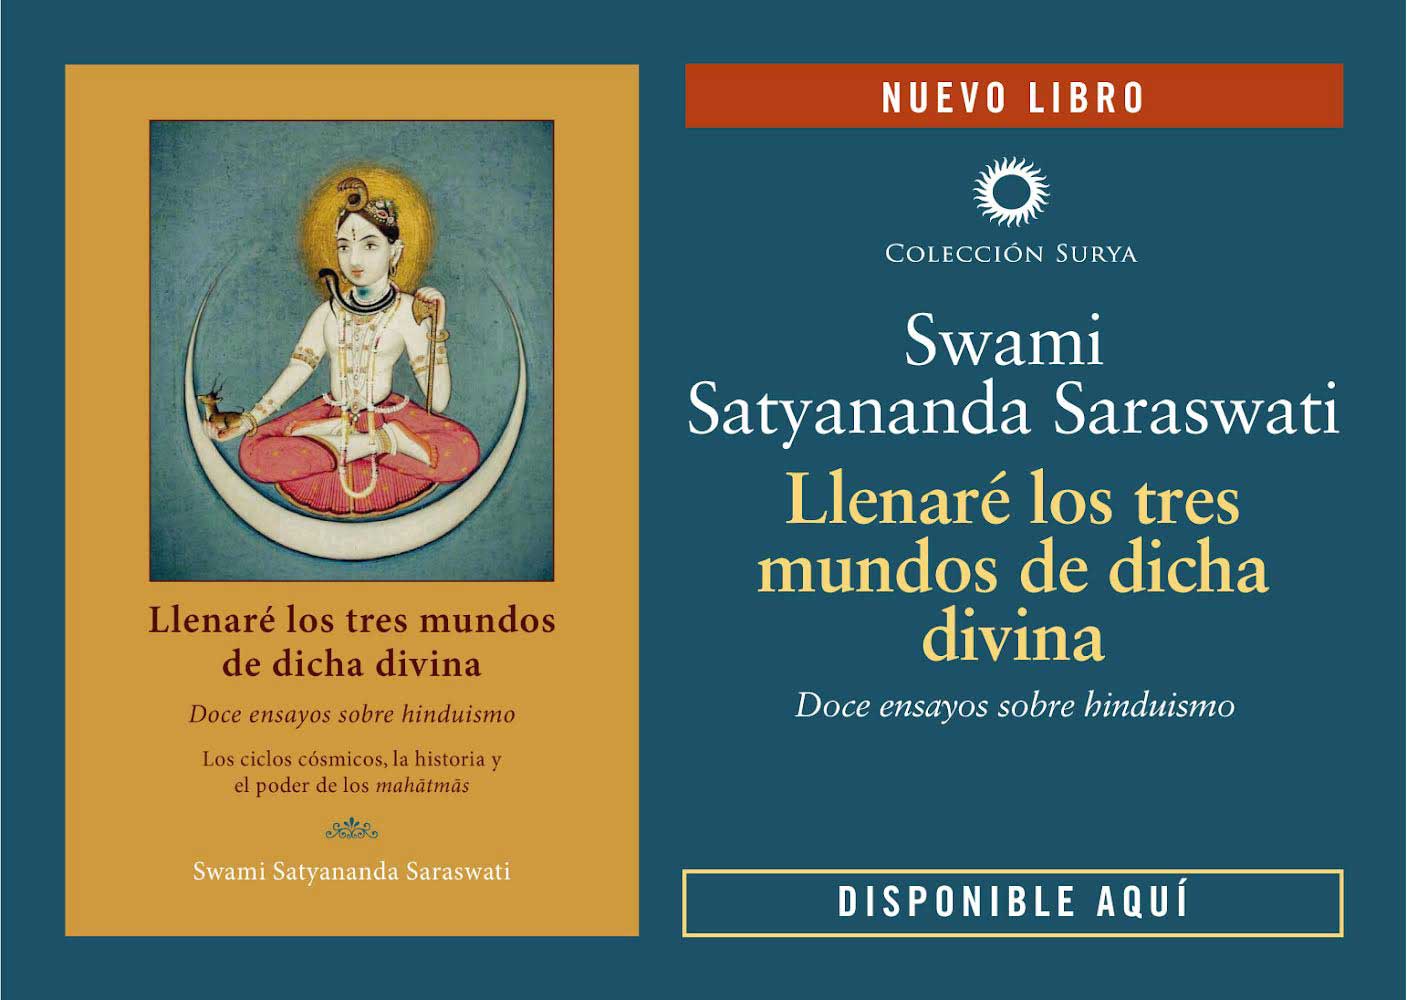 llenare el mundo de dicha divina- dos ensayos sobre hinduismo- los ciclos cosmicos la historia y el poder de los maharmas- Nuevo libro de Swami Satyananda Saraswati- Editorial Advaitavidya